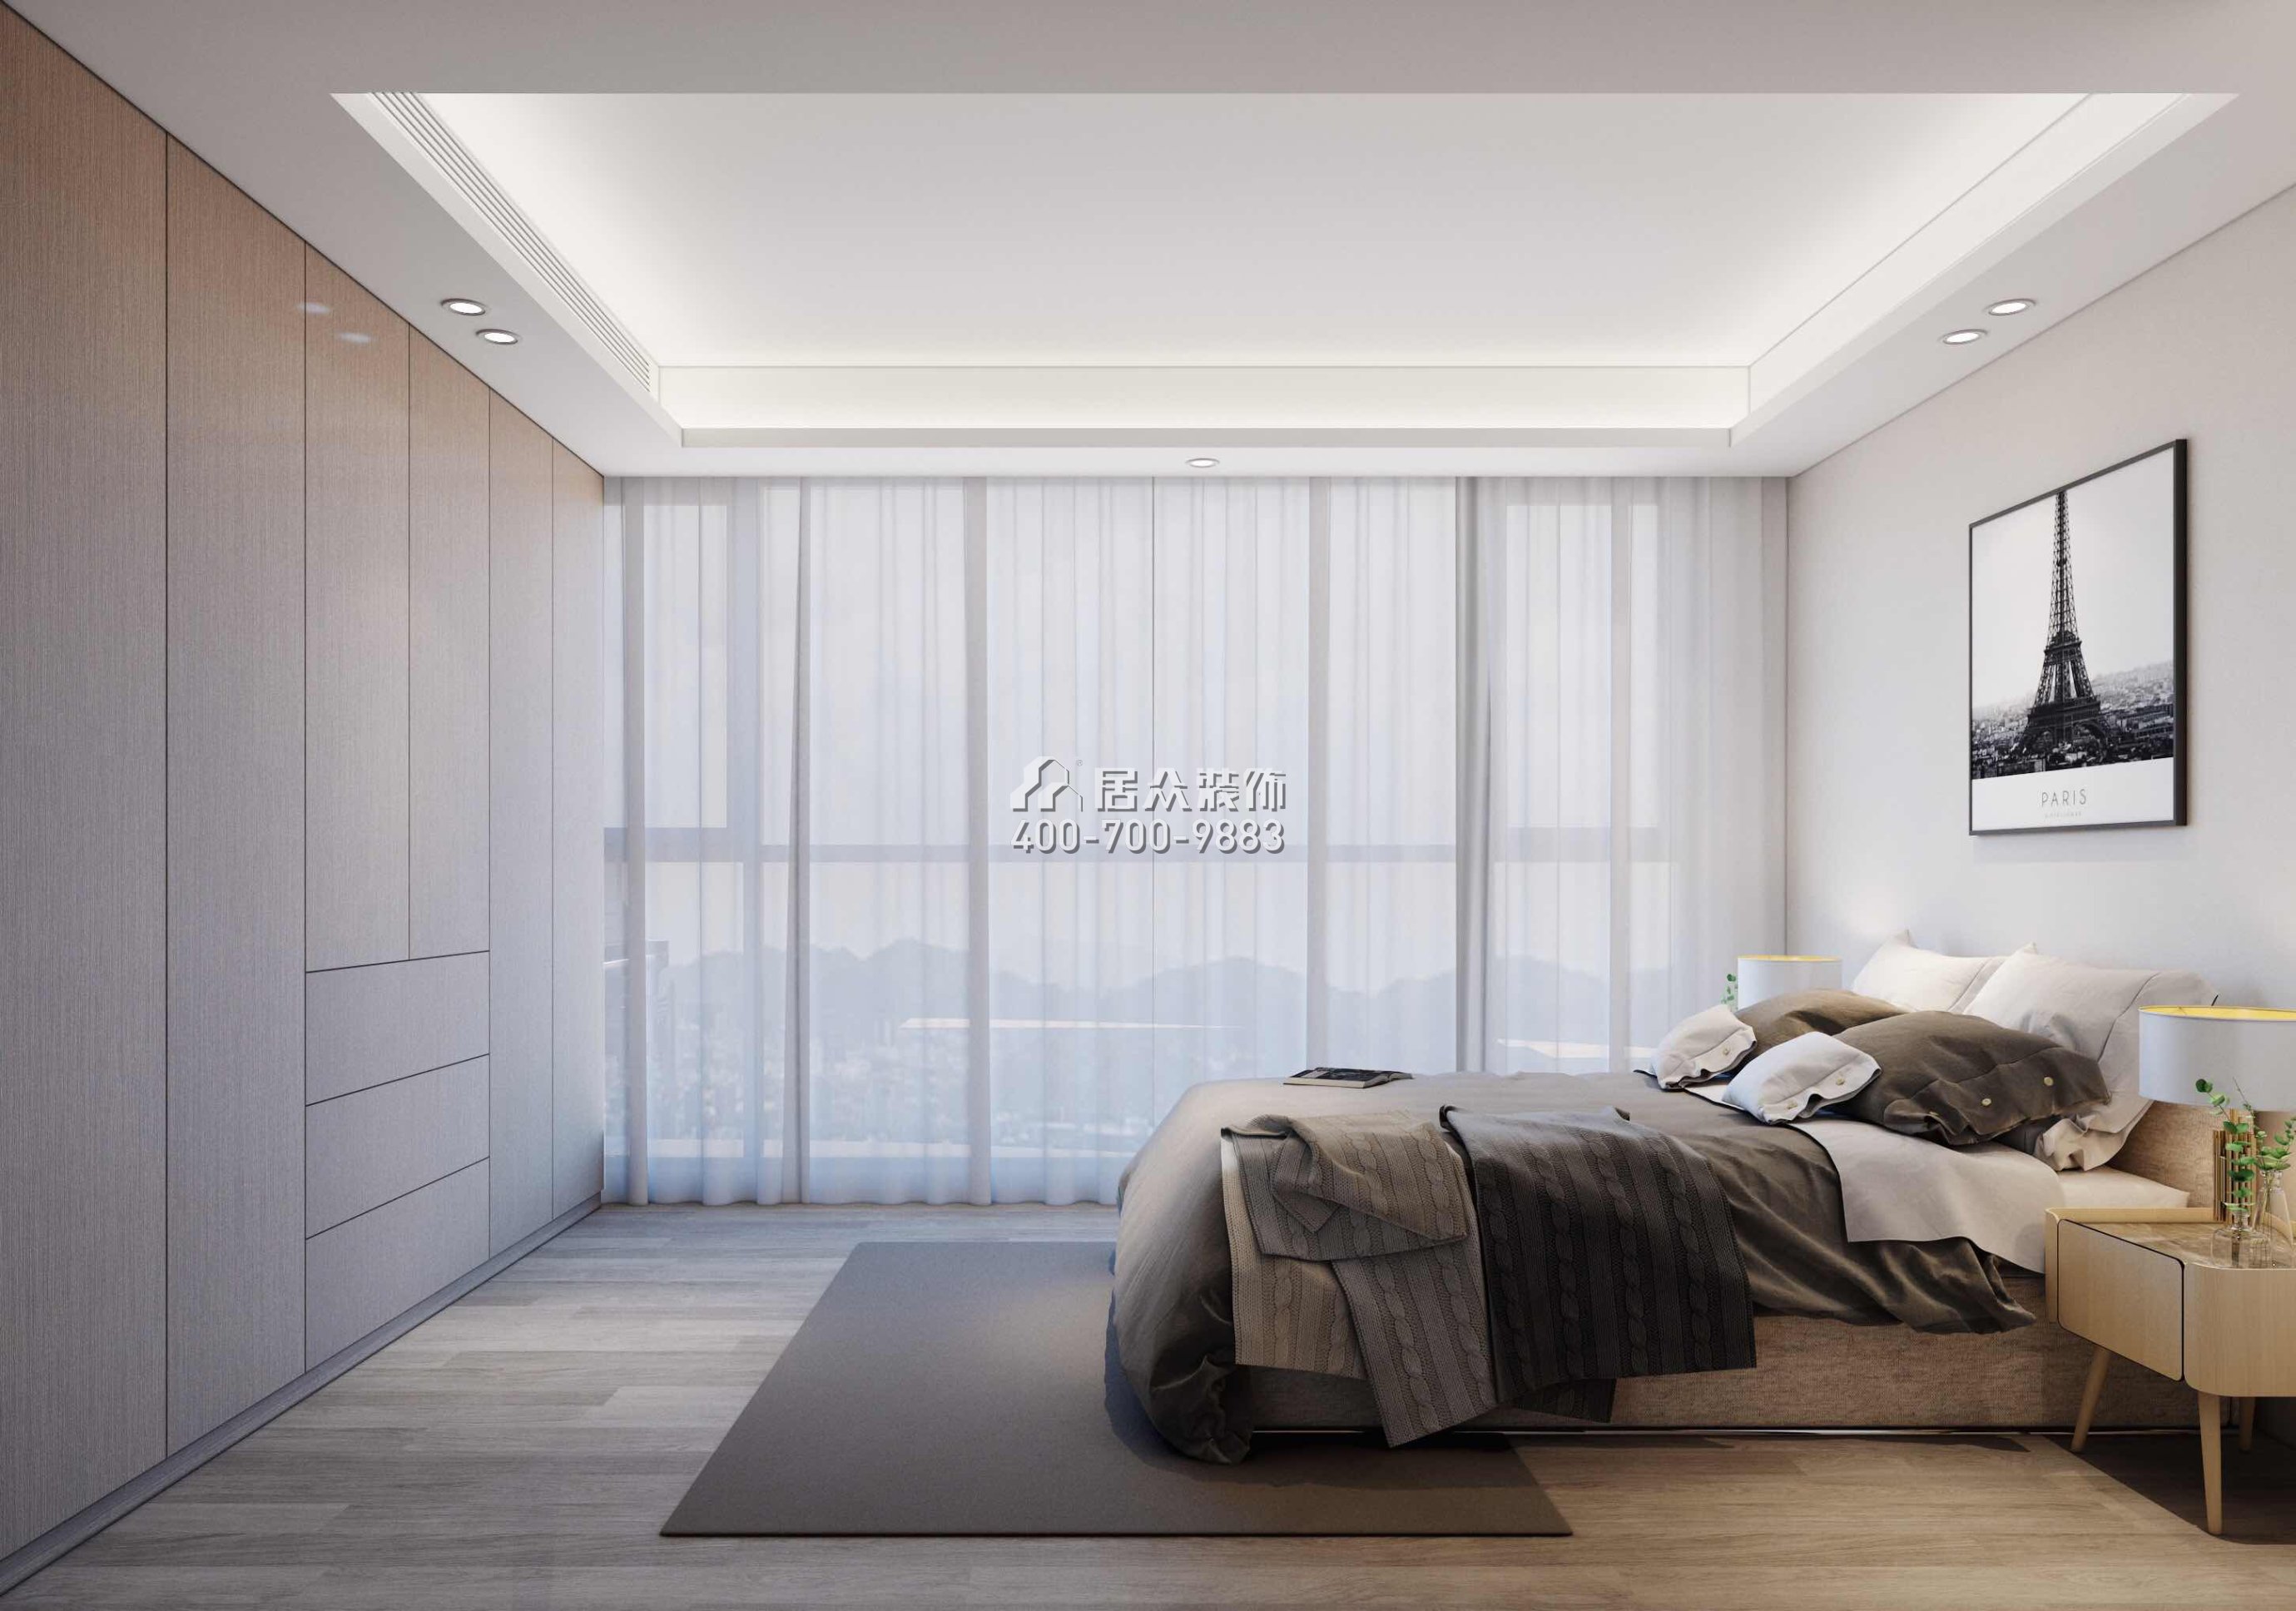 壹方中心180平方米现代简约风格平层户型卧室装修效果图